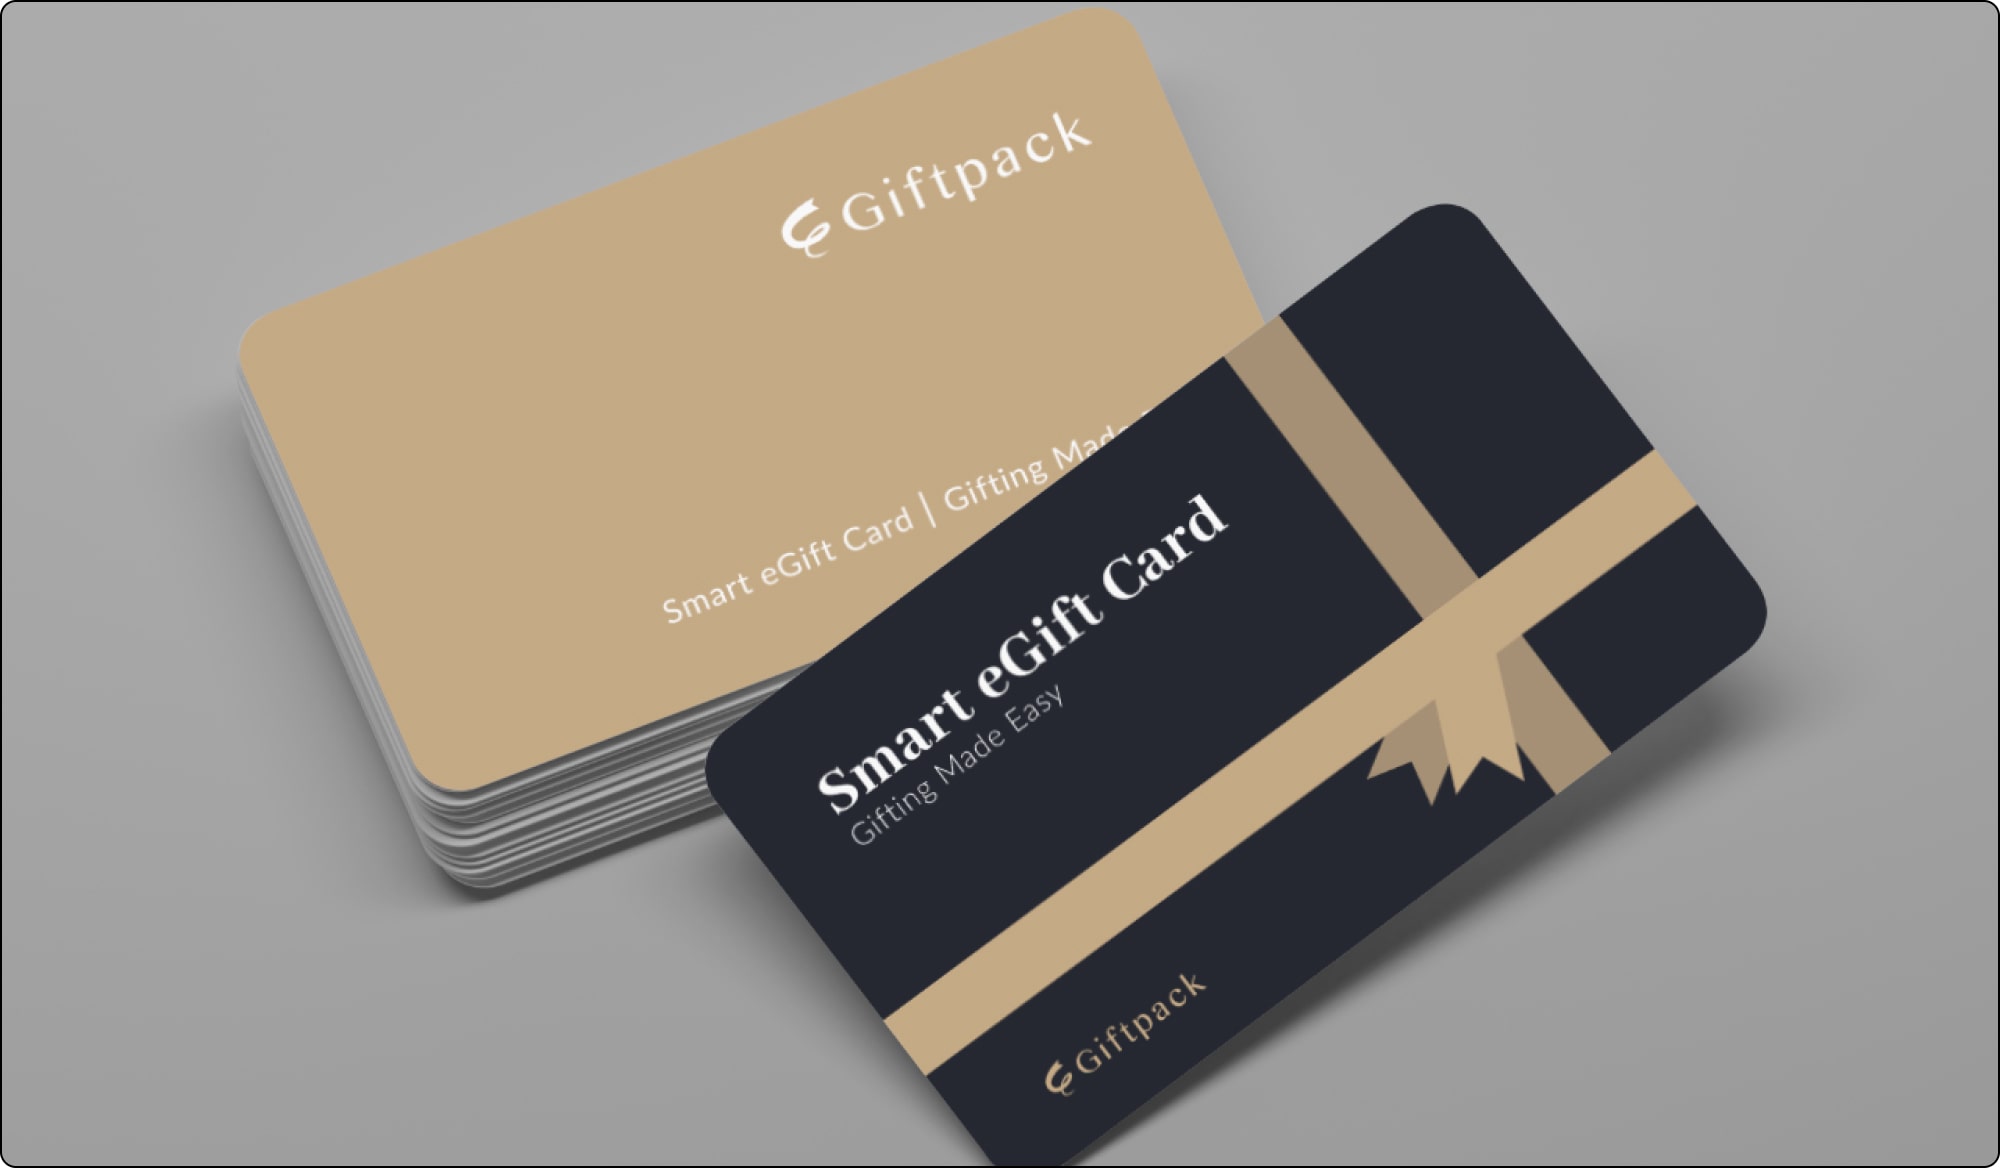 giftpack smart egift card for 350 brands